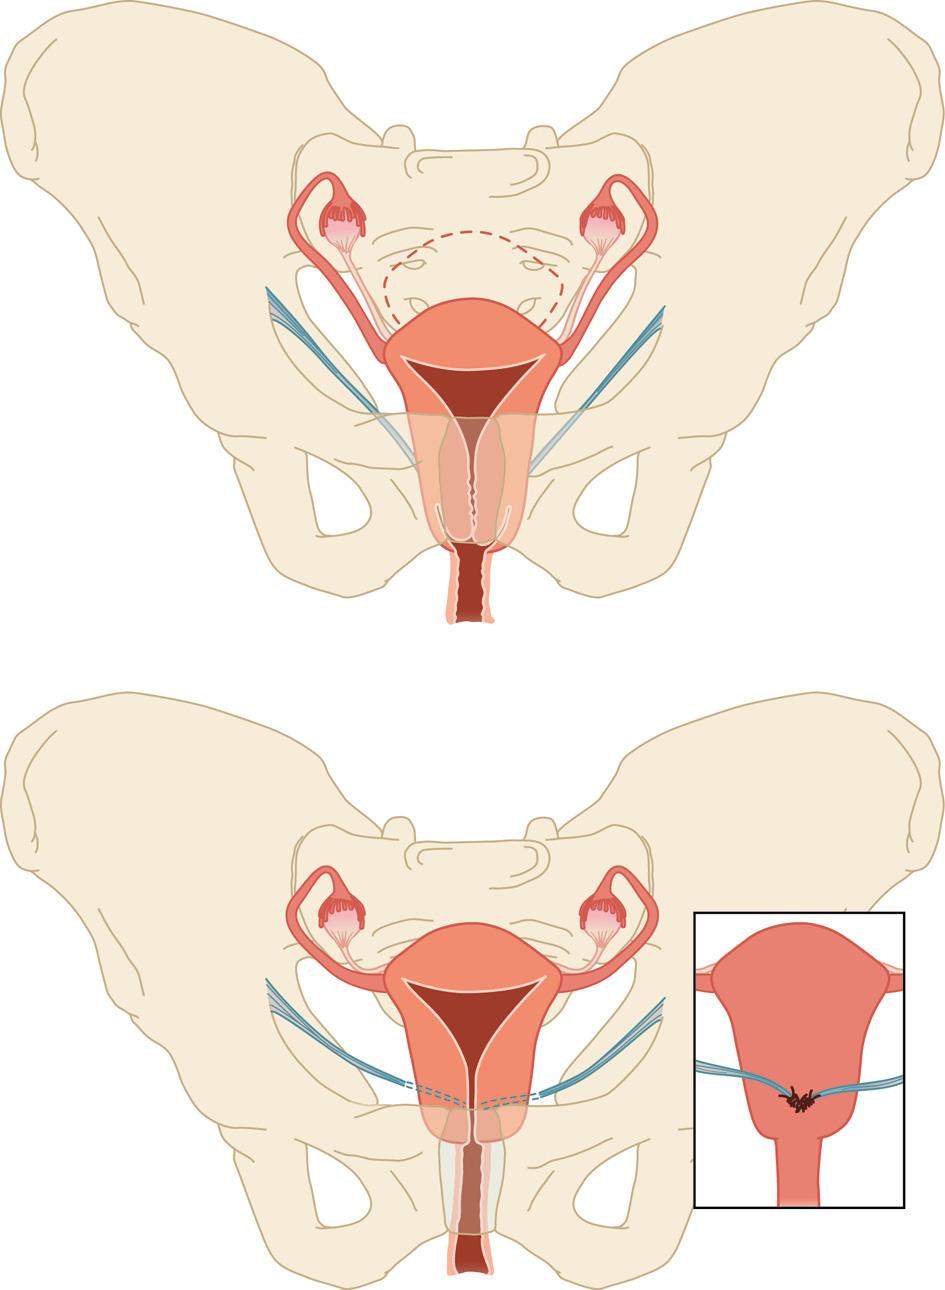 ONDERZOEK studie was er 1 jaar na de ingreep in anatomisch resultaat tussen patiënten die abdominale hysteropexie en degenen die vaginale hysterectomie hadden ondergaan (n = 82).